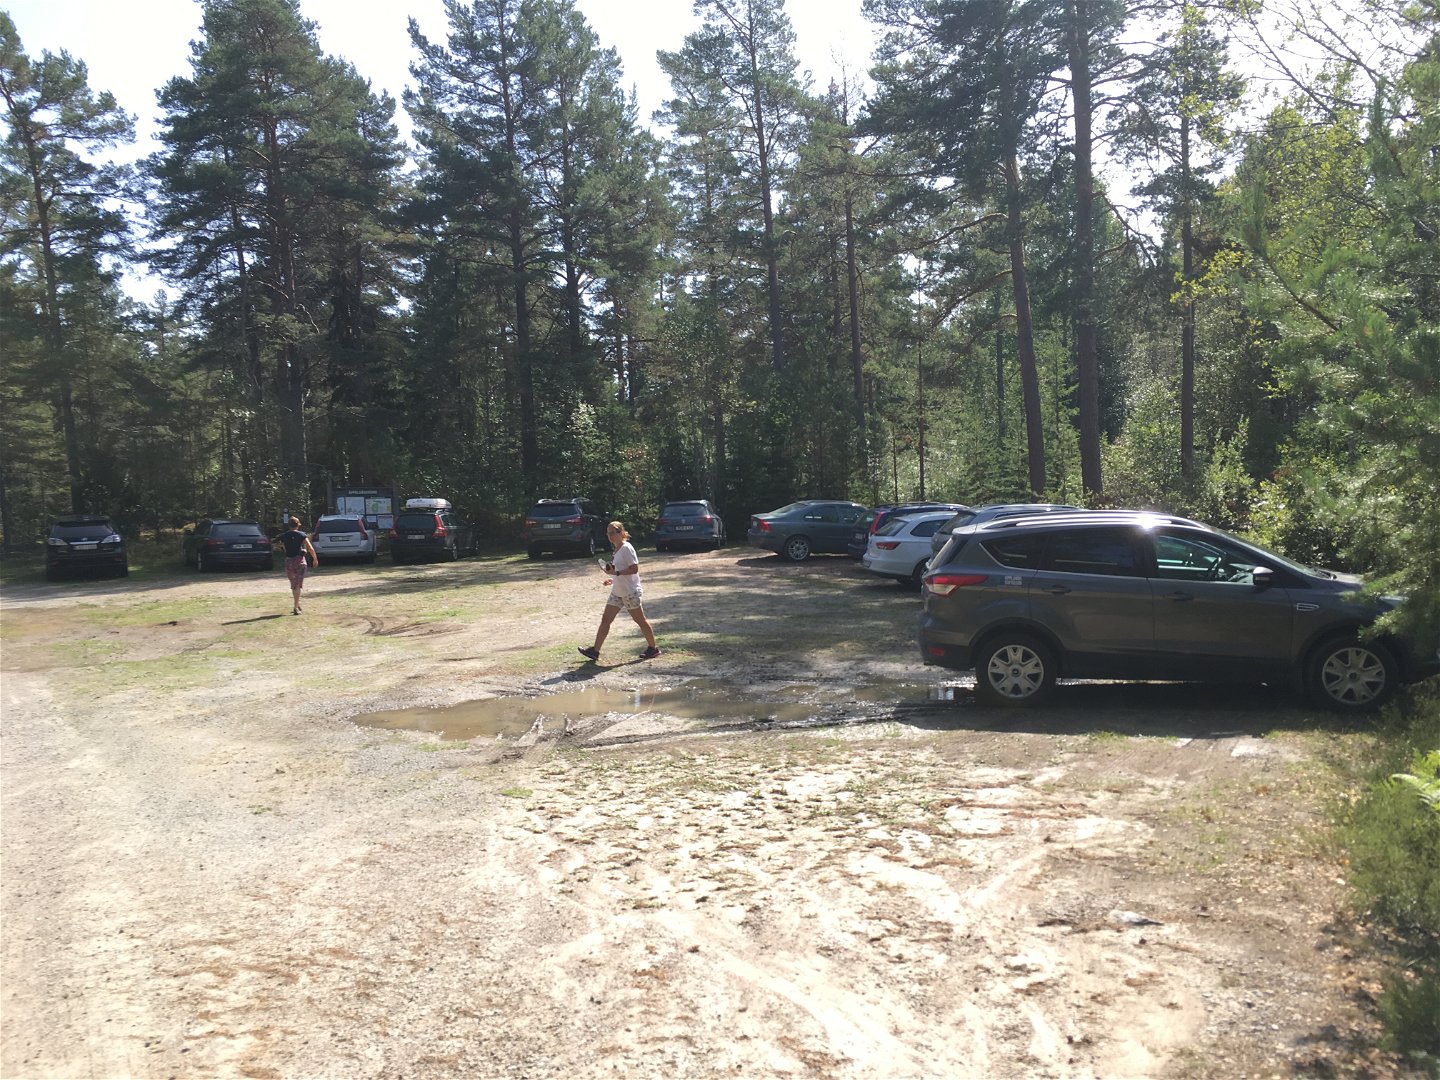 På en stor parkeringsplats med skog runtom står det många bilar. Två personer går över parkeringen.